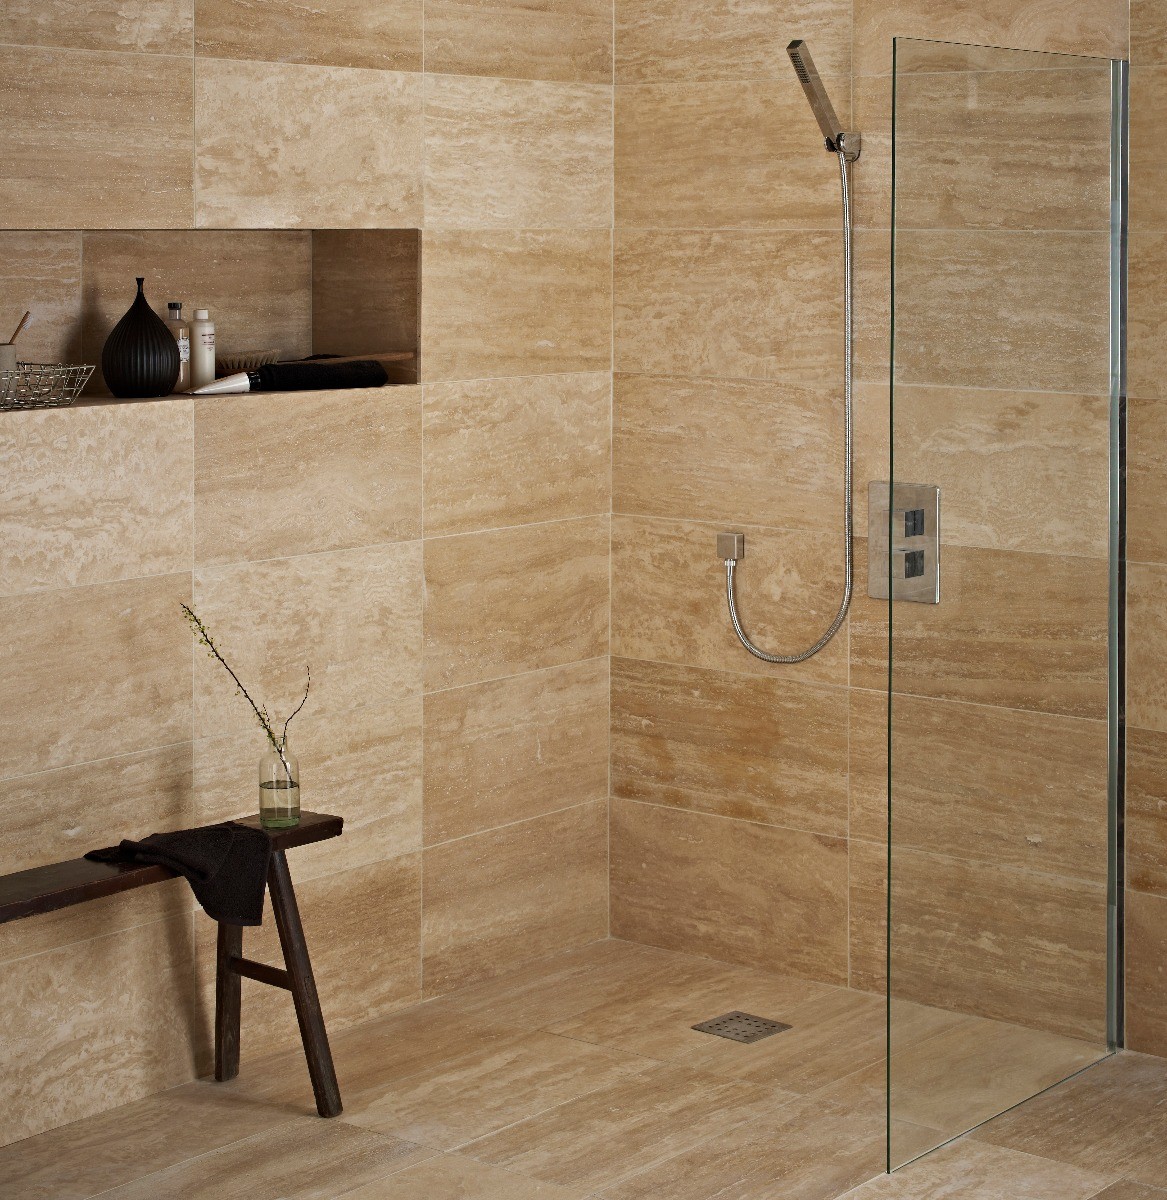 Sandelwood Travertine Topps Tiles, Travertine Bathroom Tile